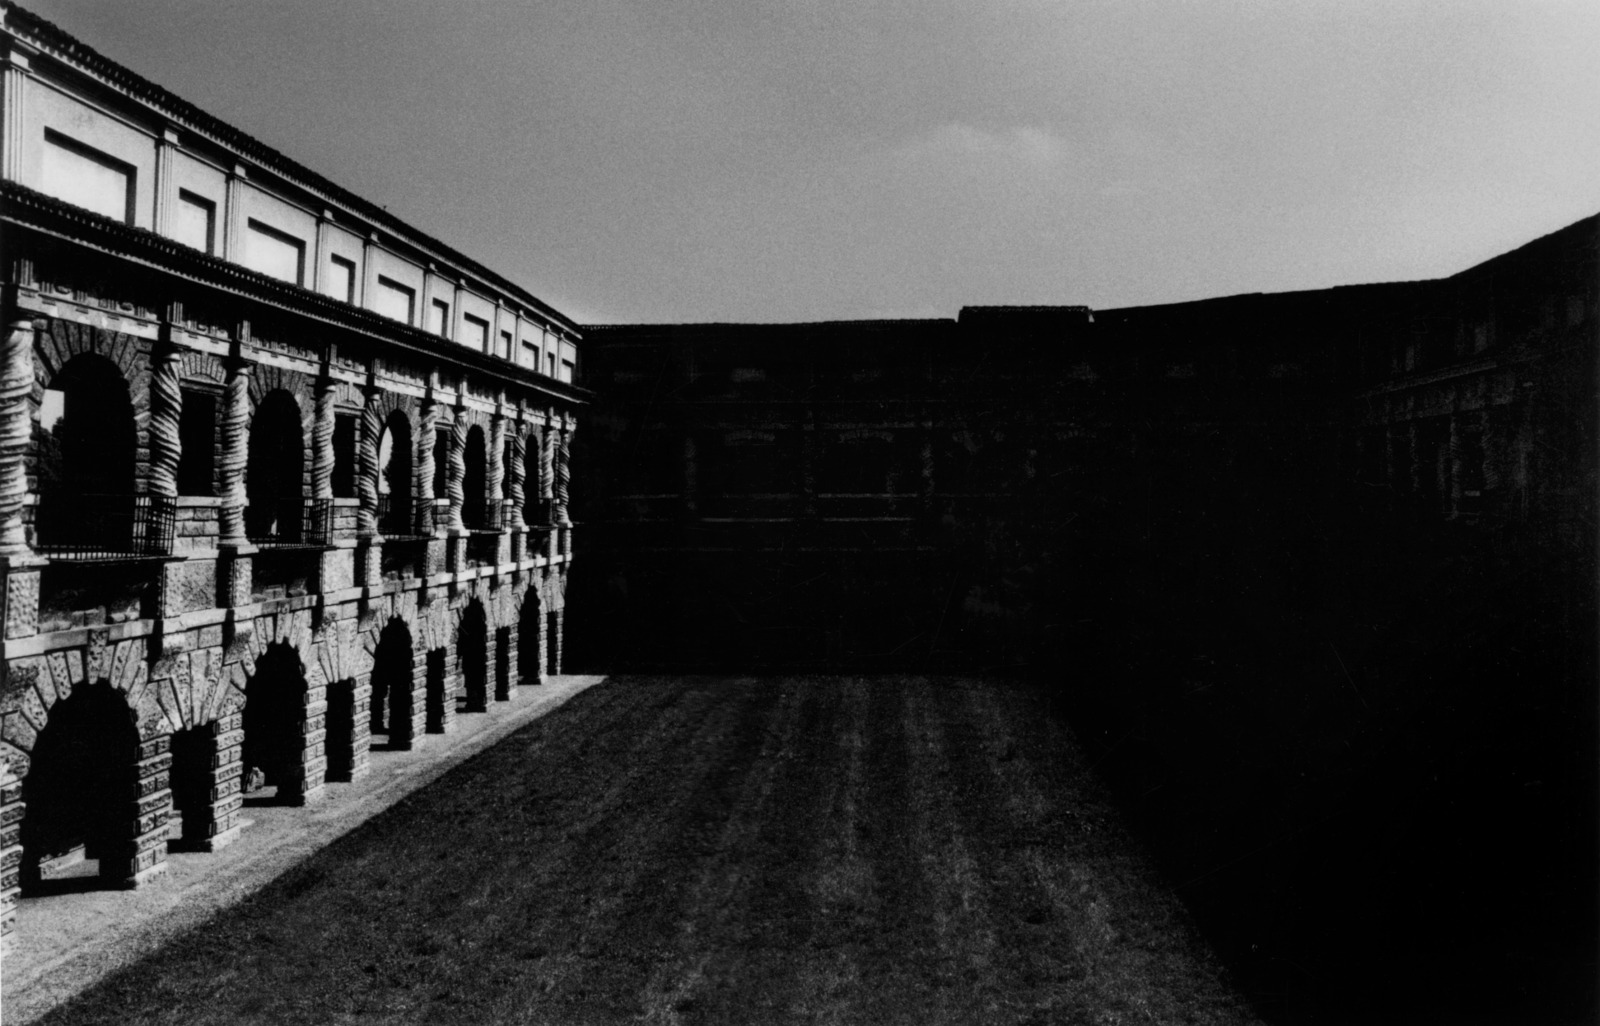 Palazzo Te de la serie Mantova il segreto della citta, Mantoue, Italie, 2002. Coll. Musee de la Photographie © Vasco Ascolini